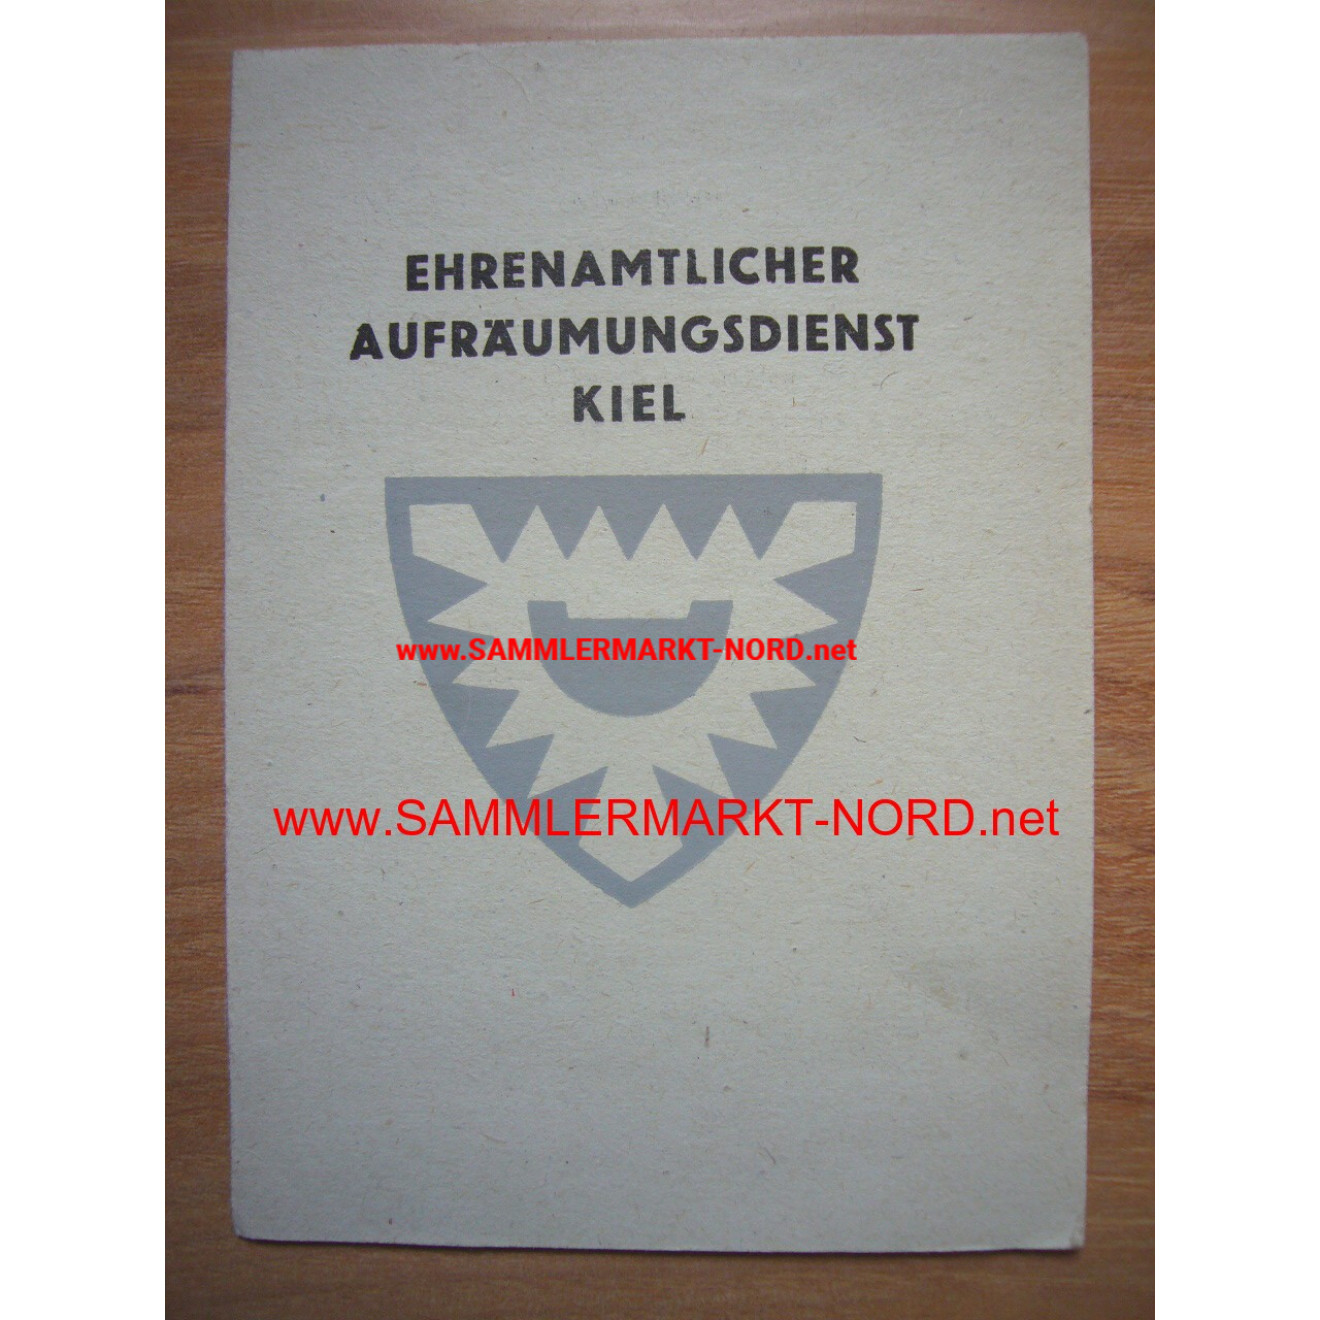 Ehrenamtlicher Aufräumungsdienst Kiel - Mitgliedsausweis